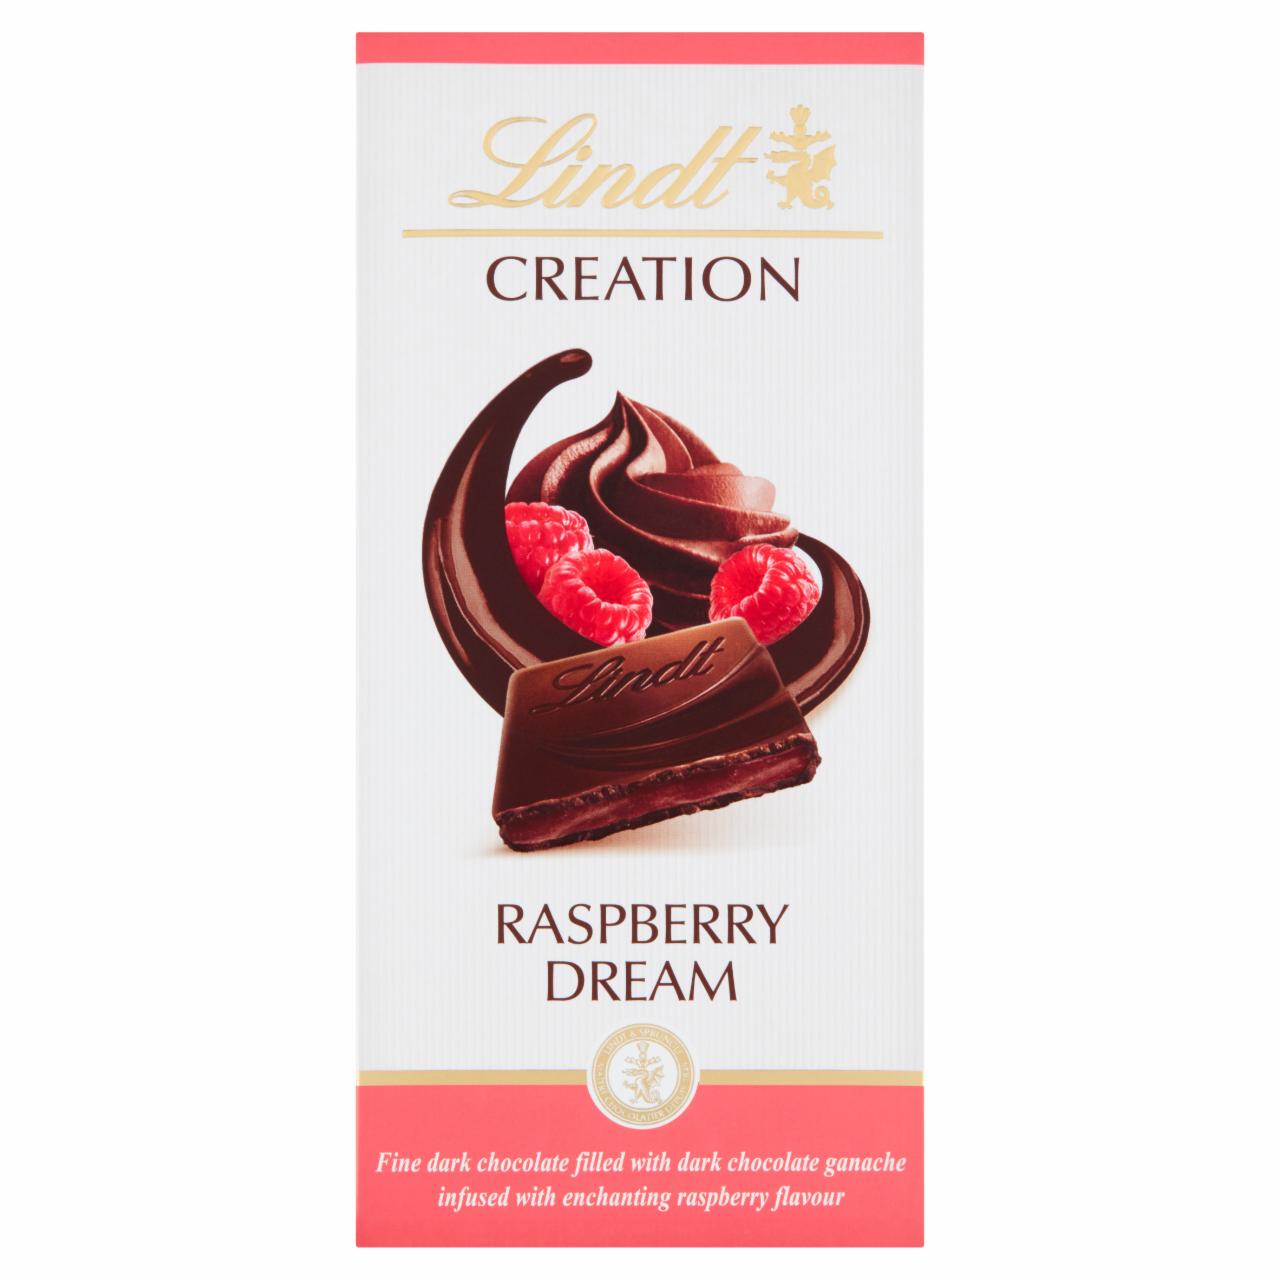 Zdjęcia - Lindt Creation Czekolada deserowa nadziewana kremem z czekoladą deserową i sokiem malinowym 150 g